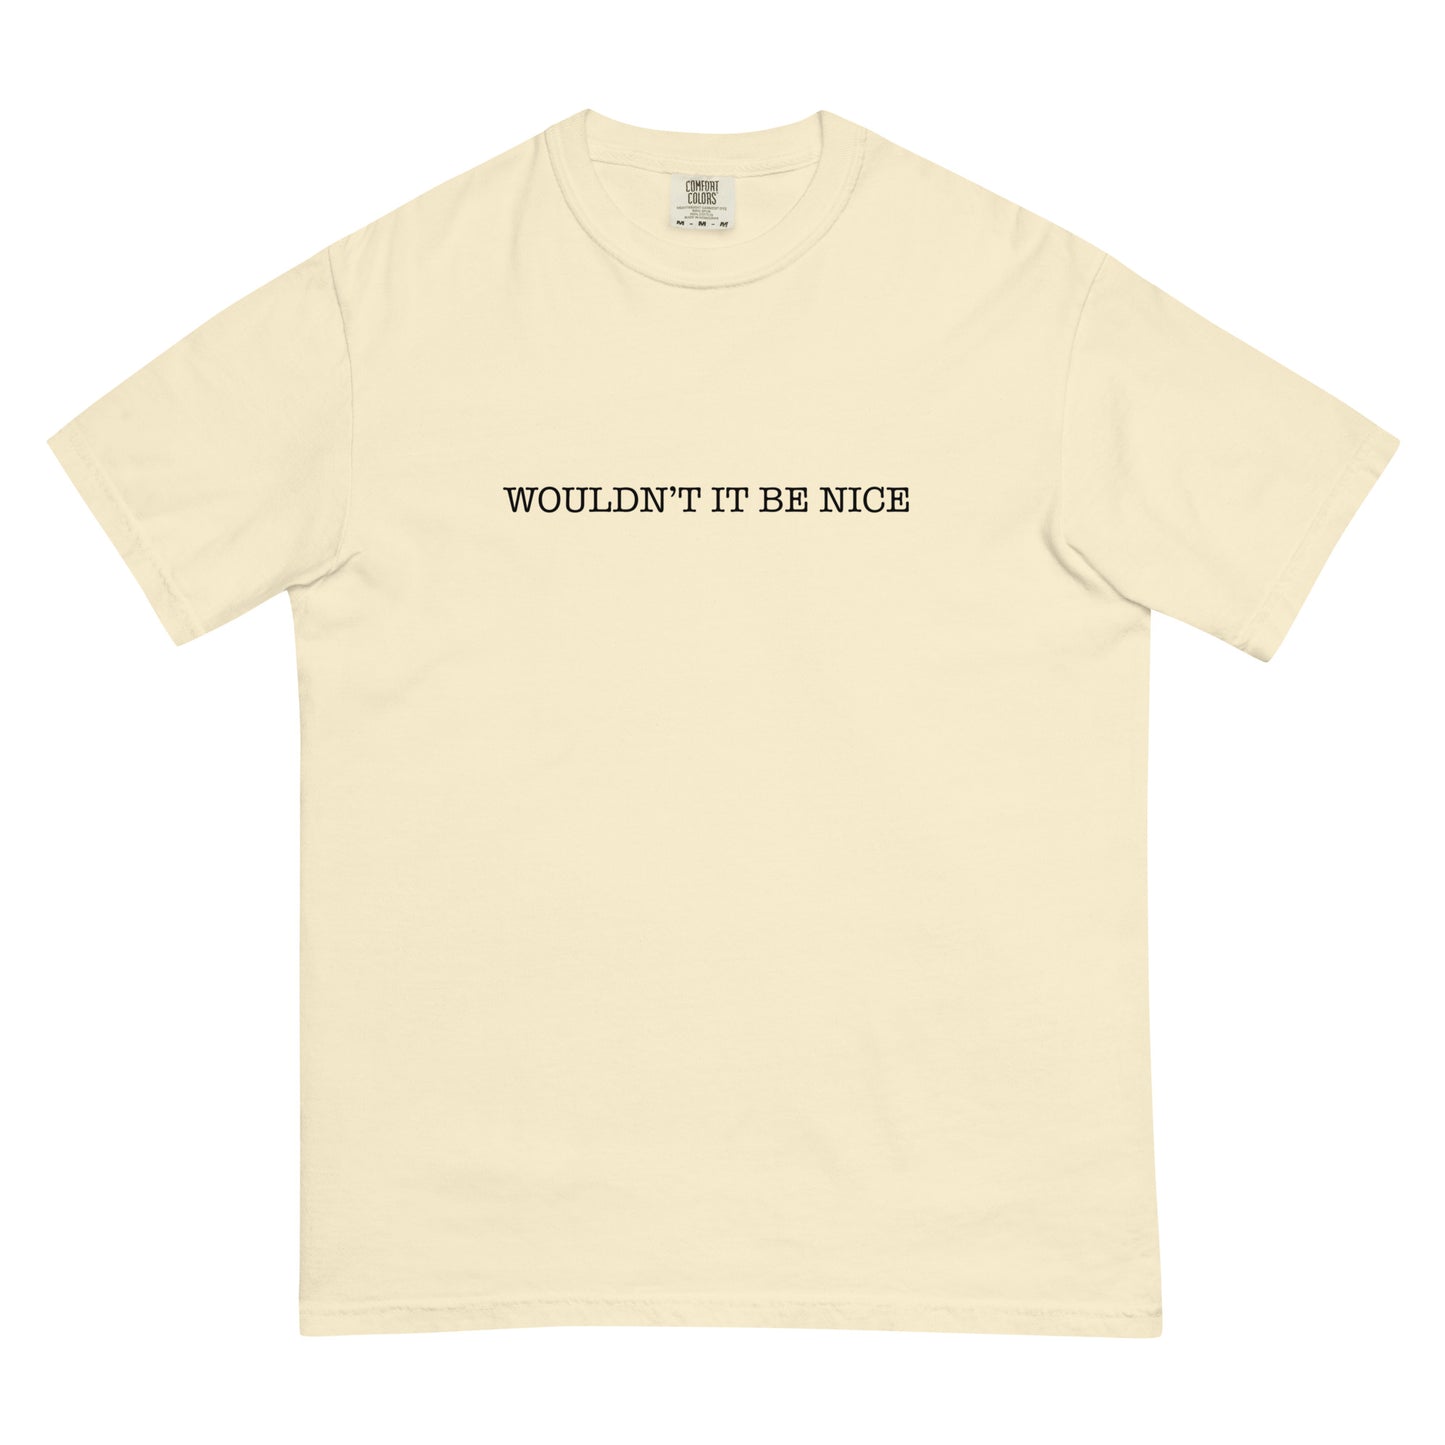 Spahn Movie Ranch T-Shirt